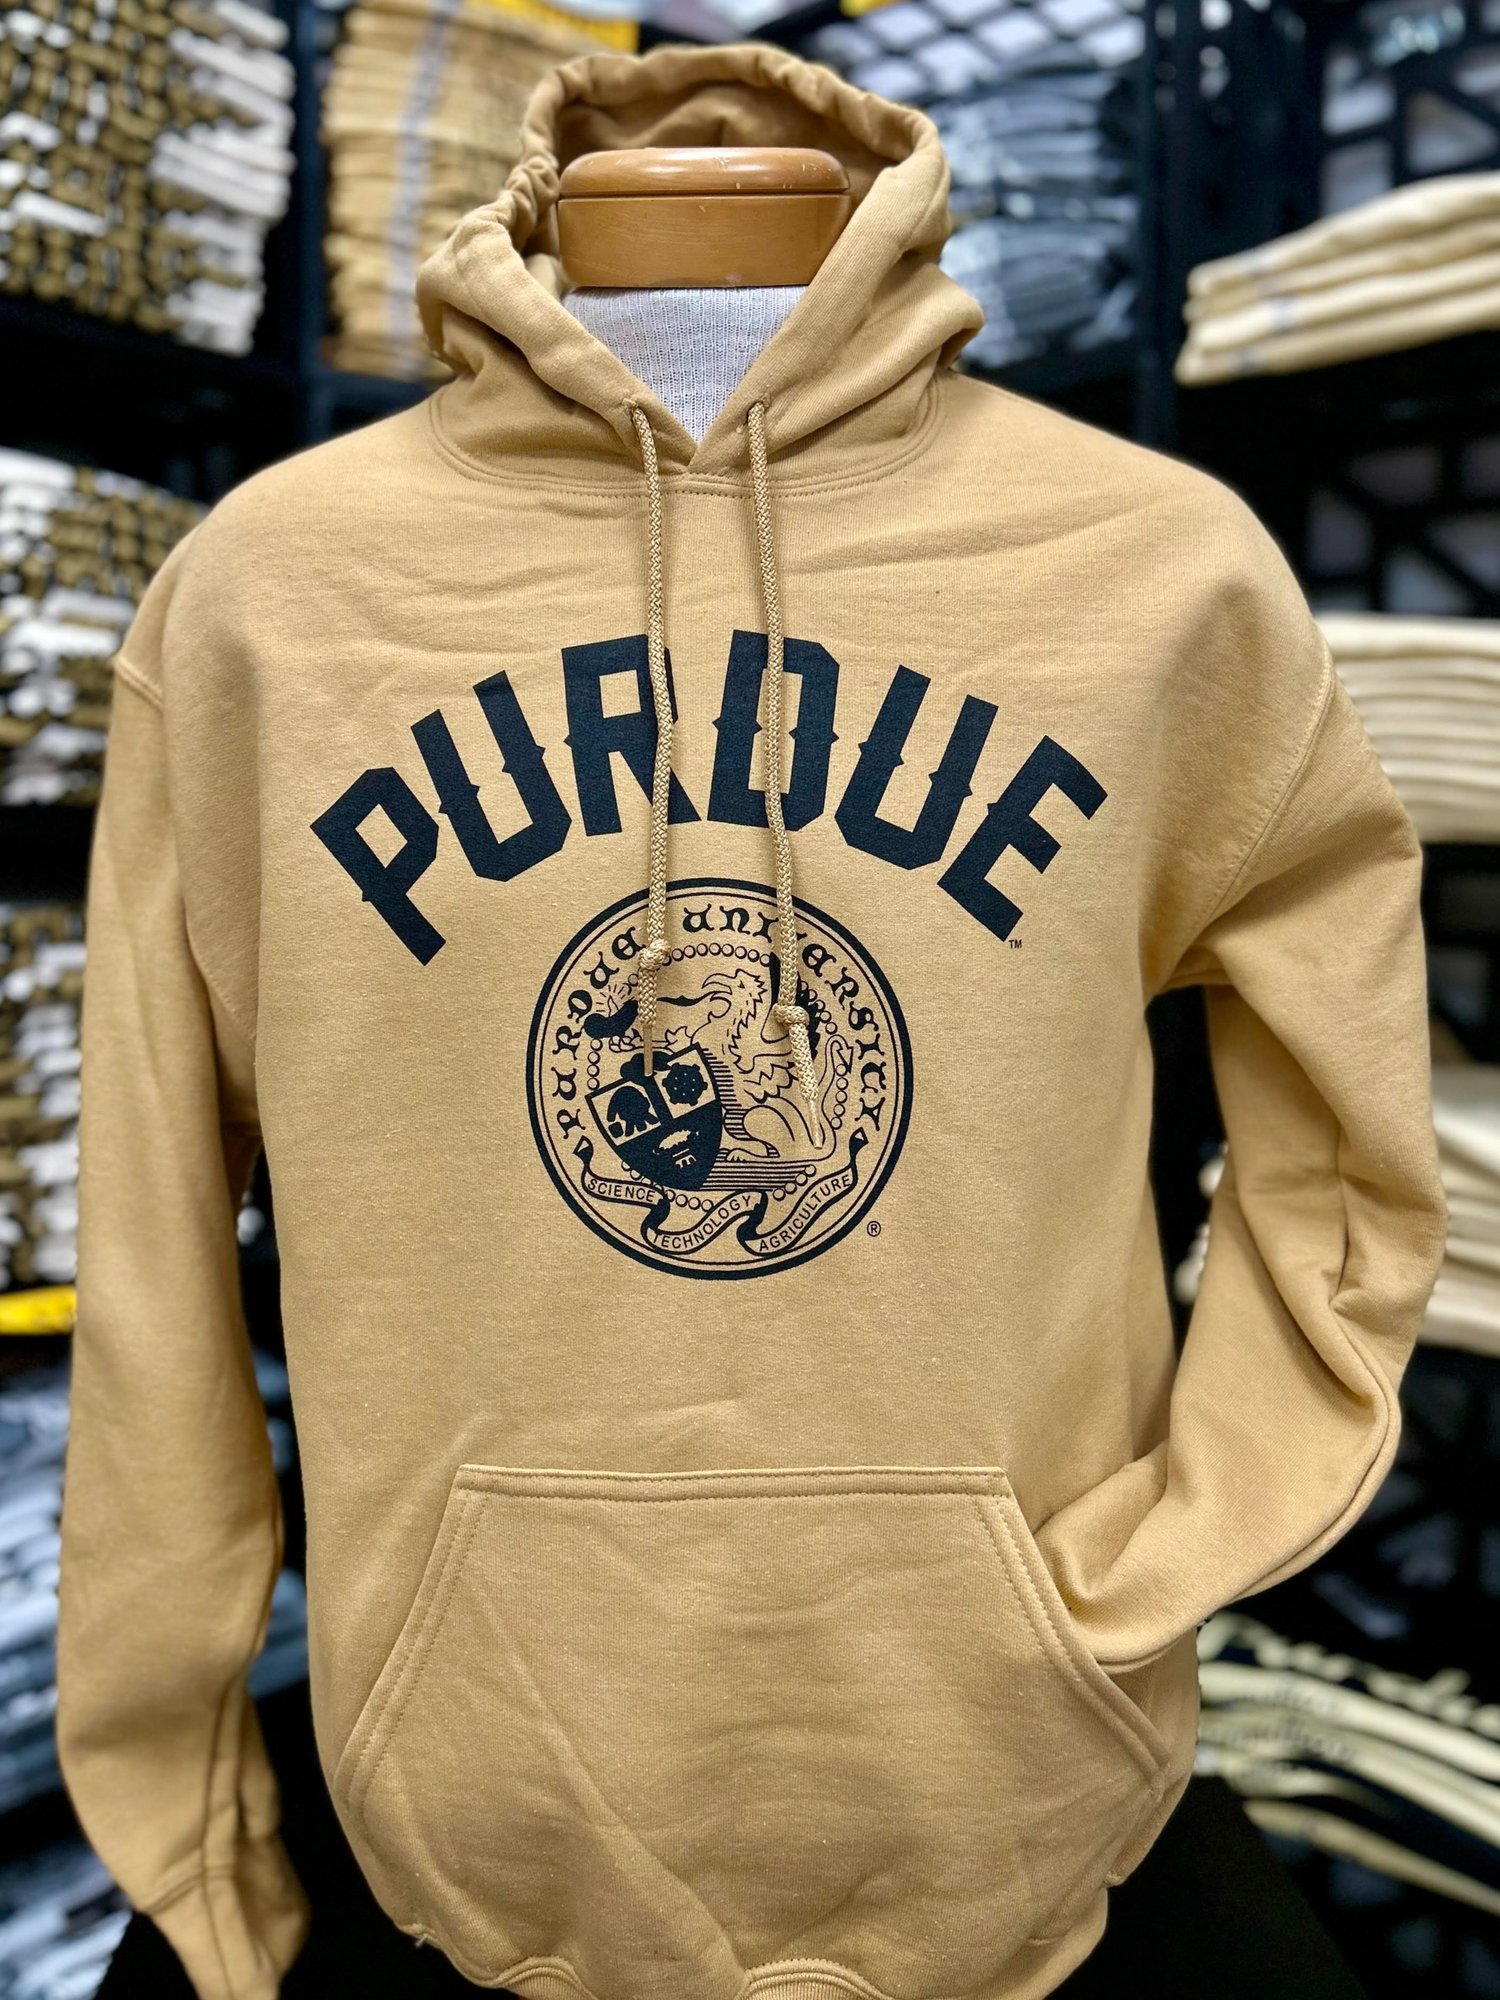 Discount Den — Purdue University Seal Hoodies